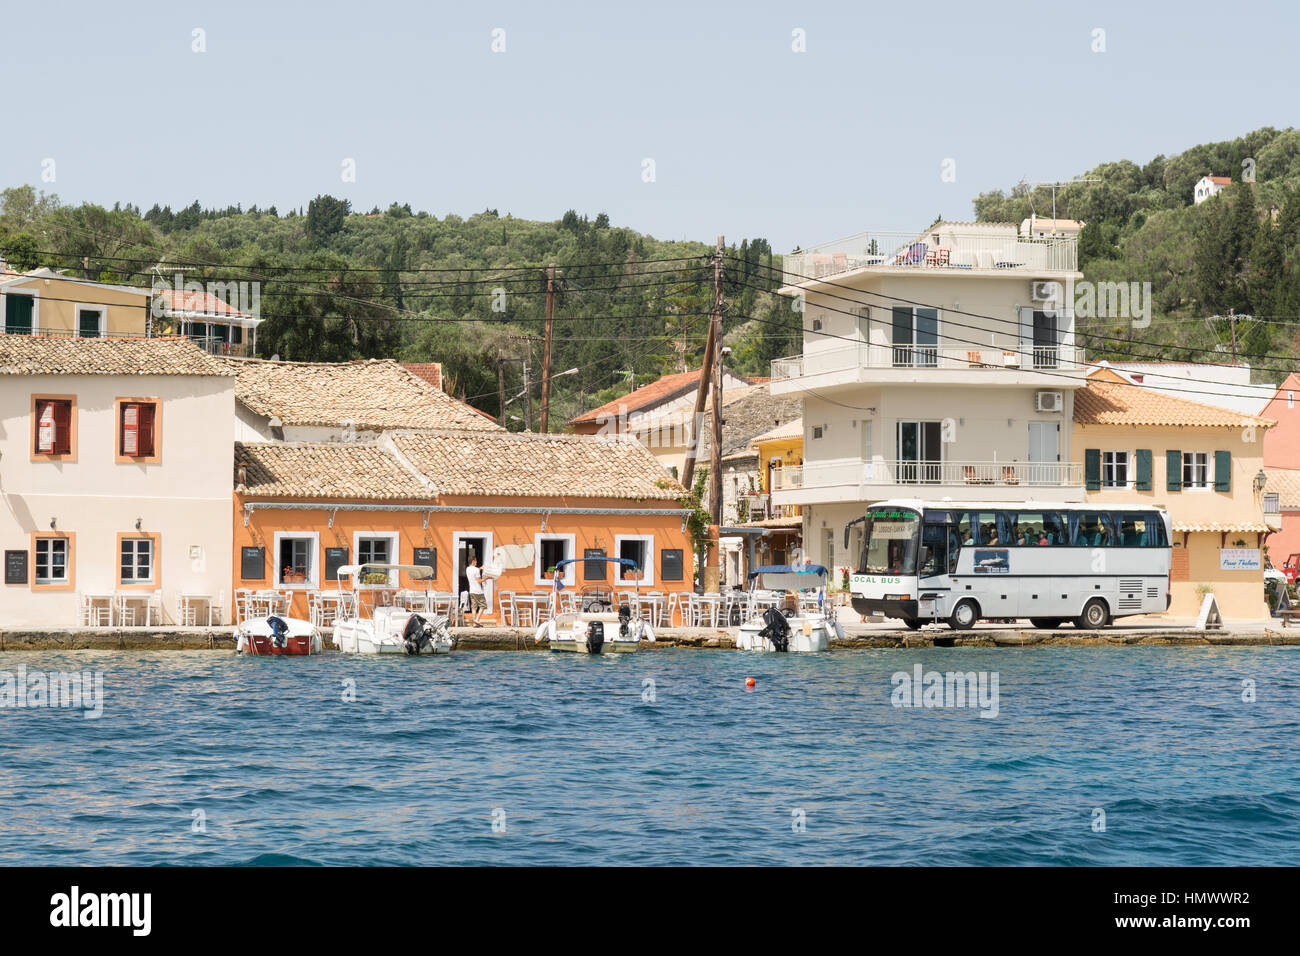 Naviguer avec précaution car son chemin le long de la route très étroite dans le minuscule village de vacances et de pêche grec de Loggos sur la petite île de Paxos Banque D'Images